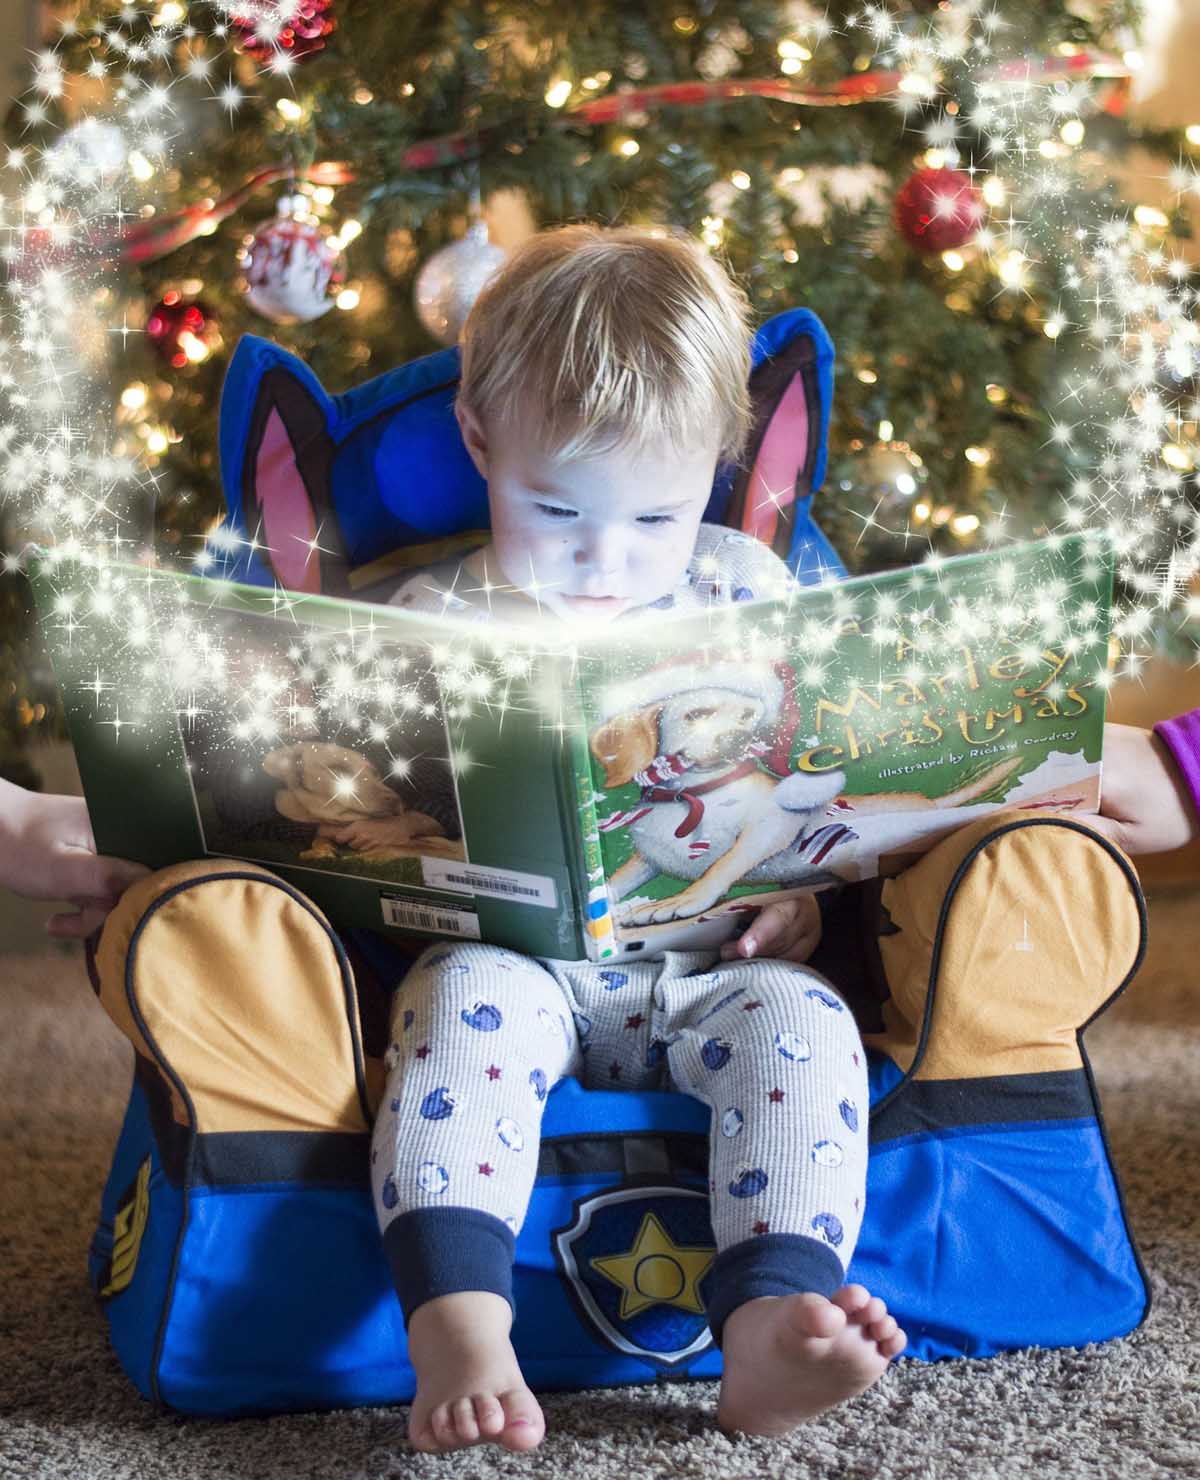 Der literarische Adventskalender: Hinter jedem Türchen versteckt sich ein Kinderbuch, das entdeckt werden will. Symbolbild: pixabay